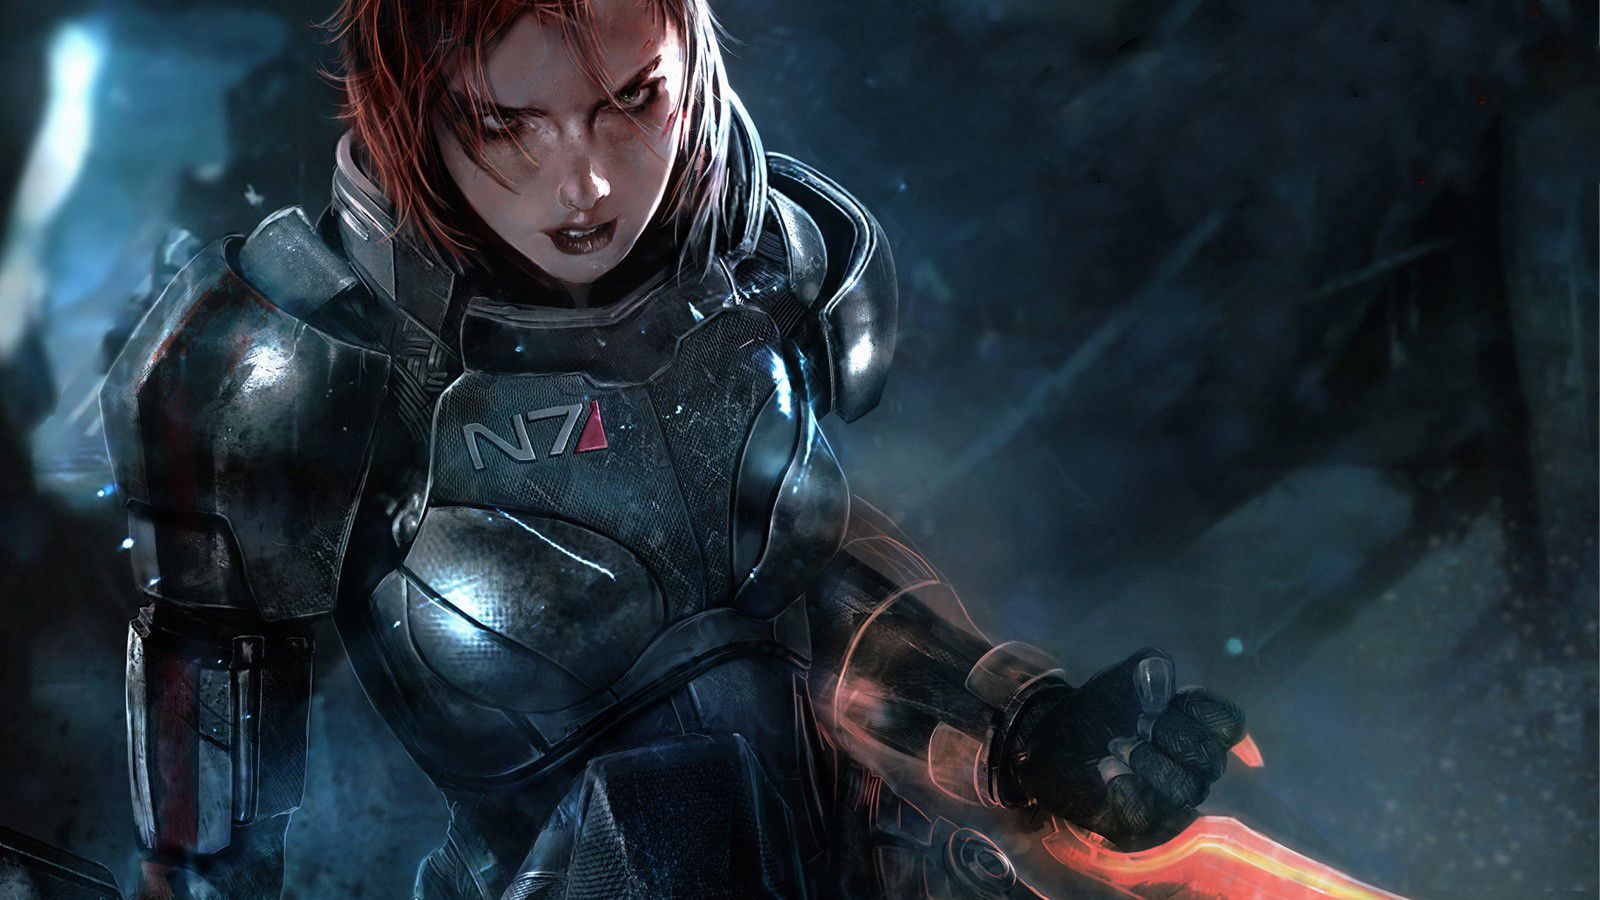 BioWare hé lộ hình ảnh teaser, báo hiệu sự ra đời của một phần Mass Effect mới